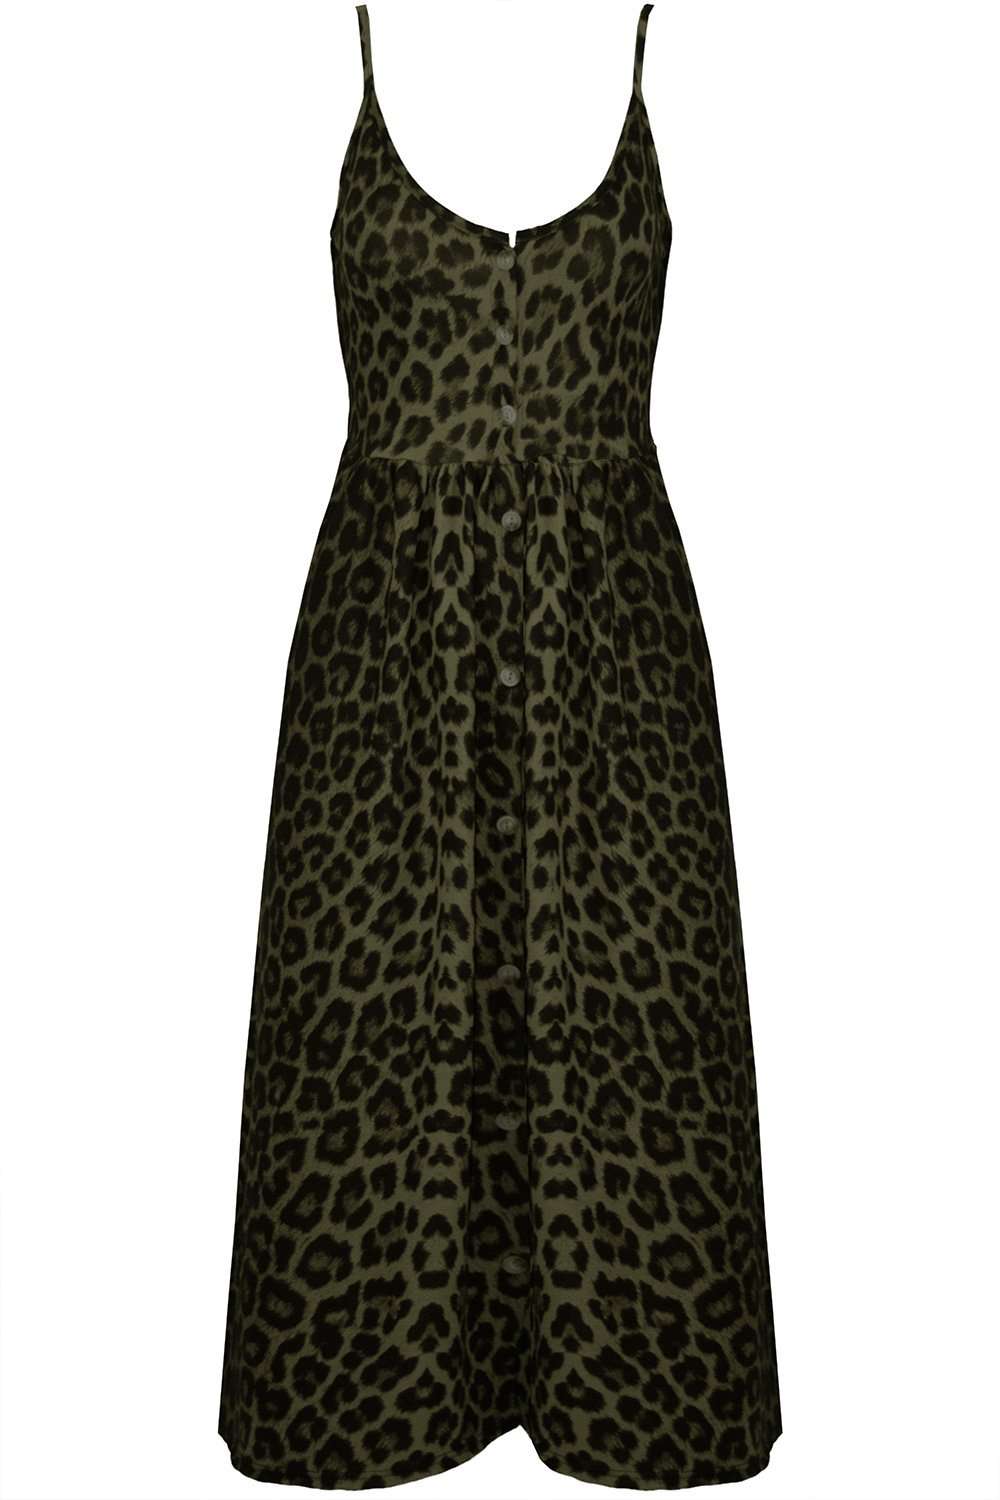 Breana Button Up Strappy Leopard Print Dress - bejealous-com